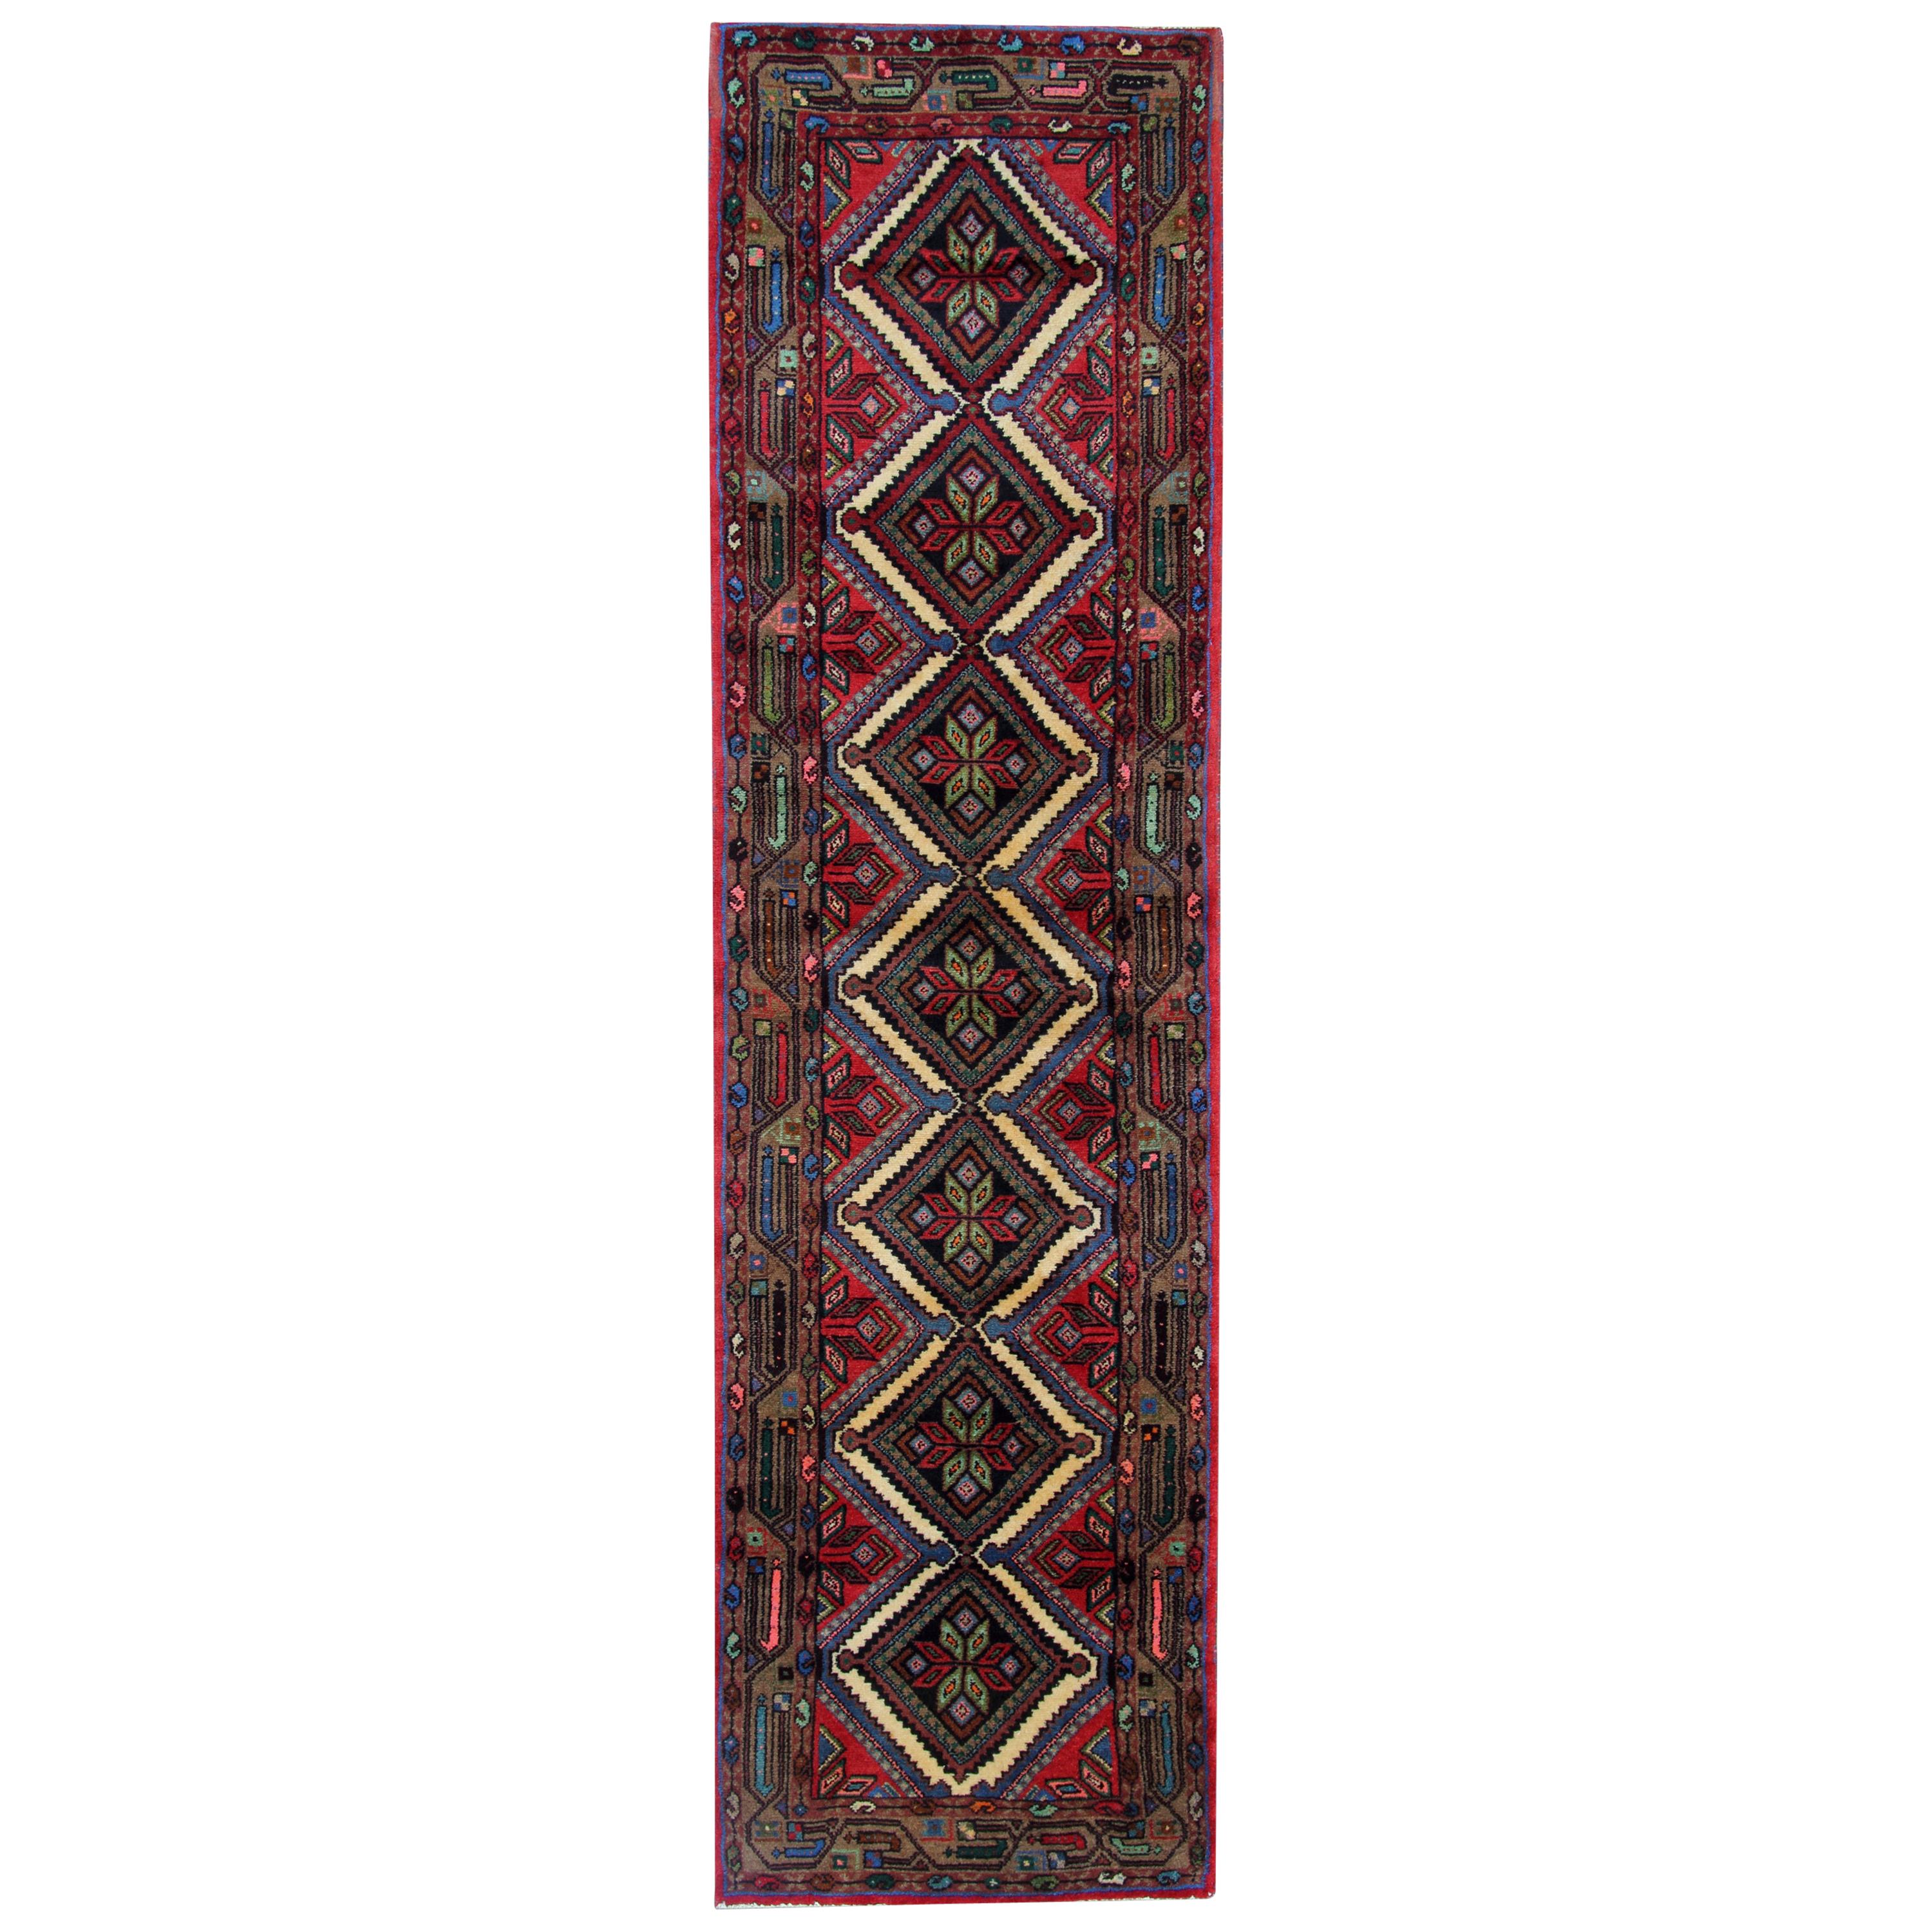 Handmade Geometric Runner Rug Long Traditional Red Blue Carpet 78x278cm For Sale